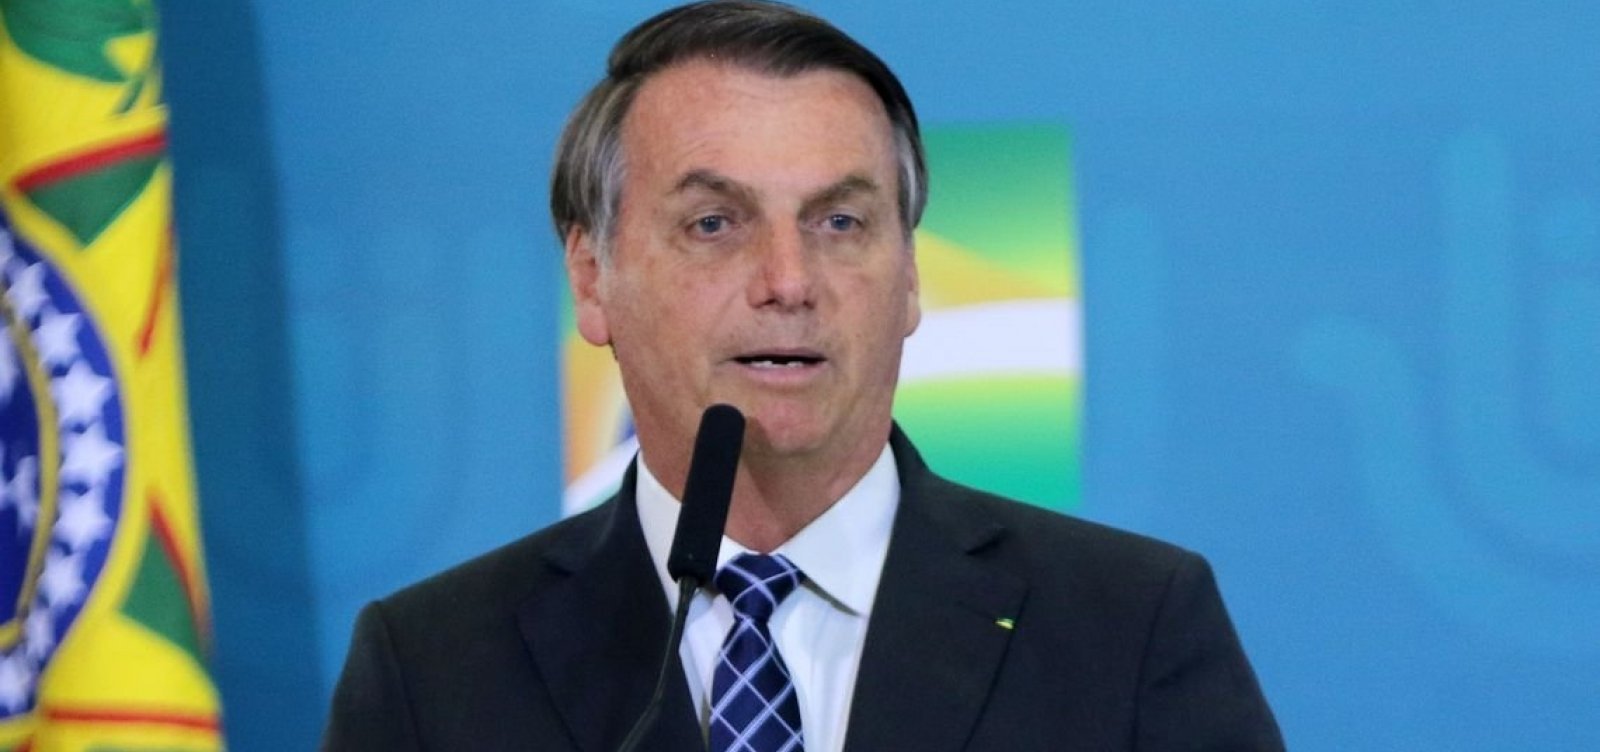 Vacinas da Pfizer chegam 'mês que vem, mas não sei a quantidade', diz Bolsonaro